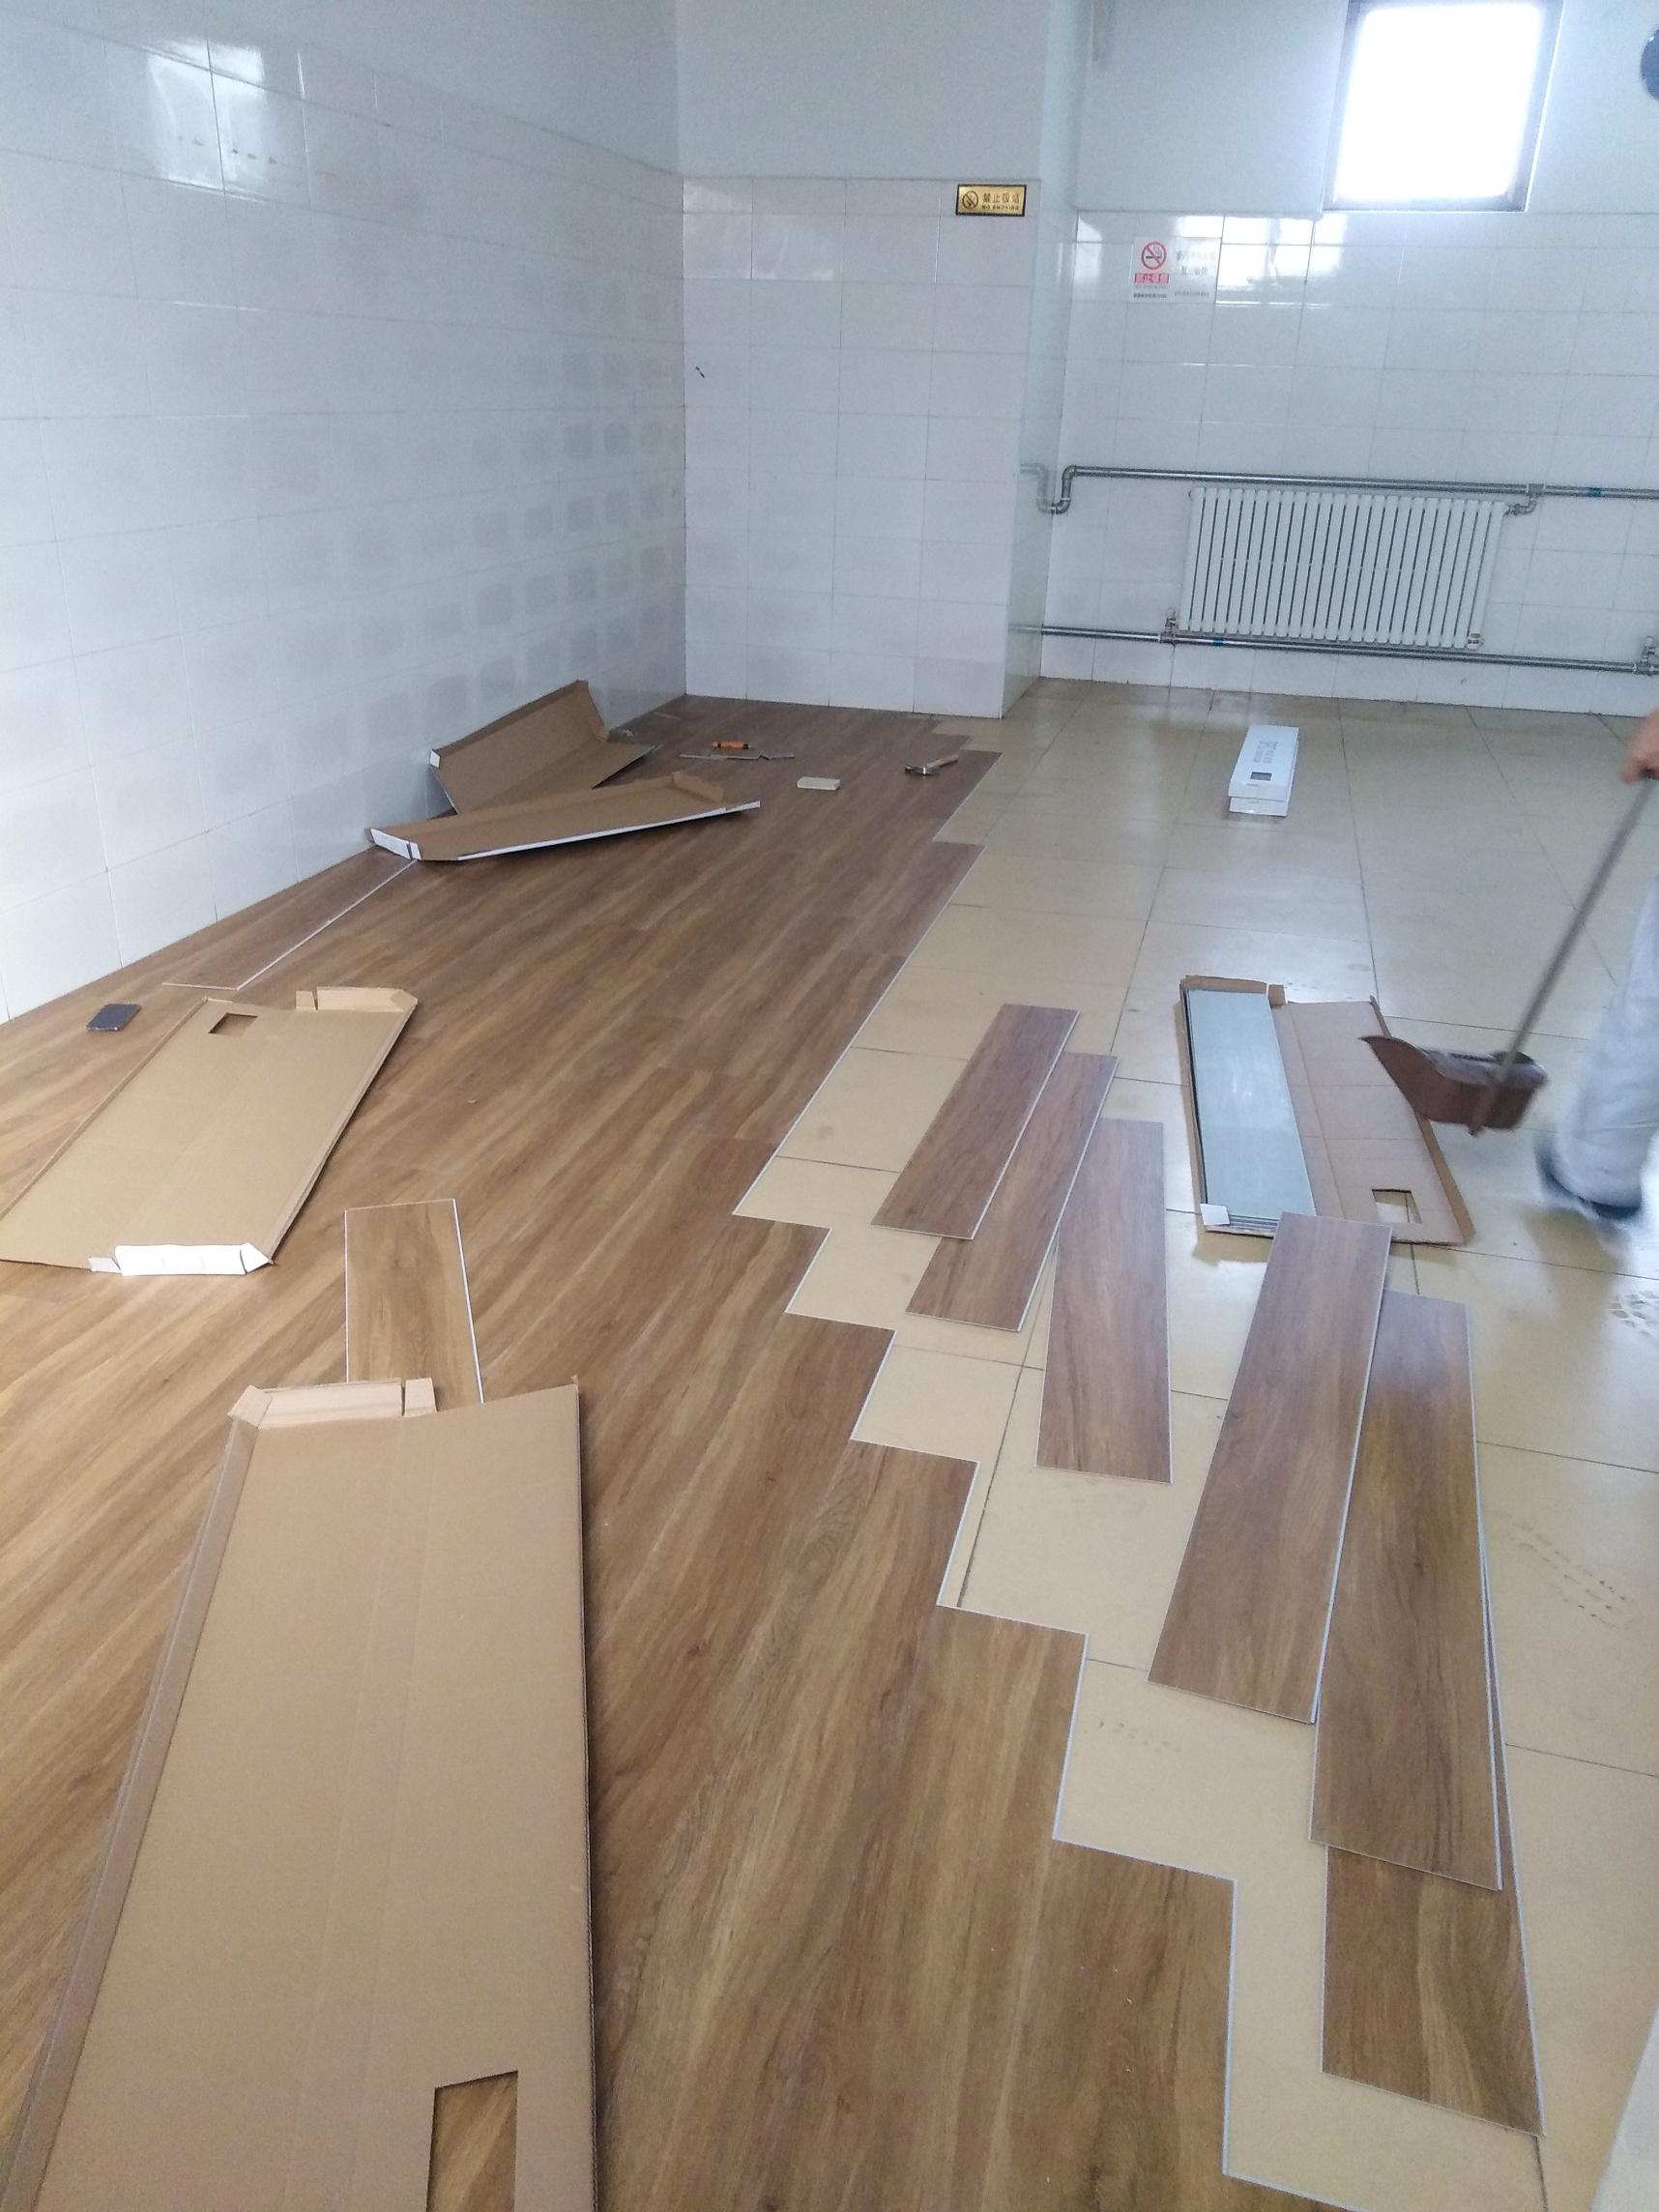 东贯市村委会办公室铺装SPC锁扣地板木纹系列，进行中一